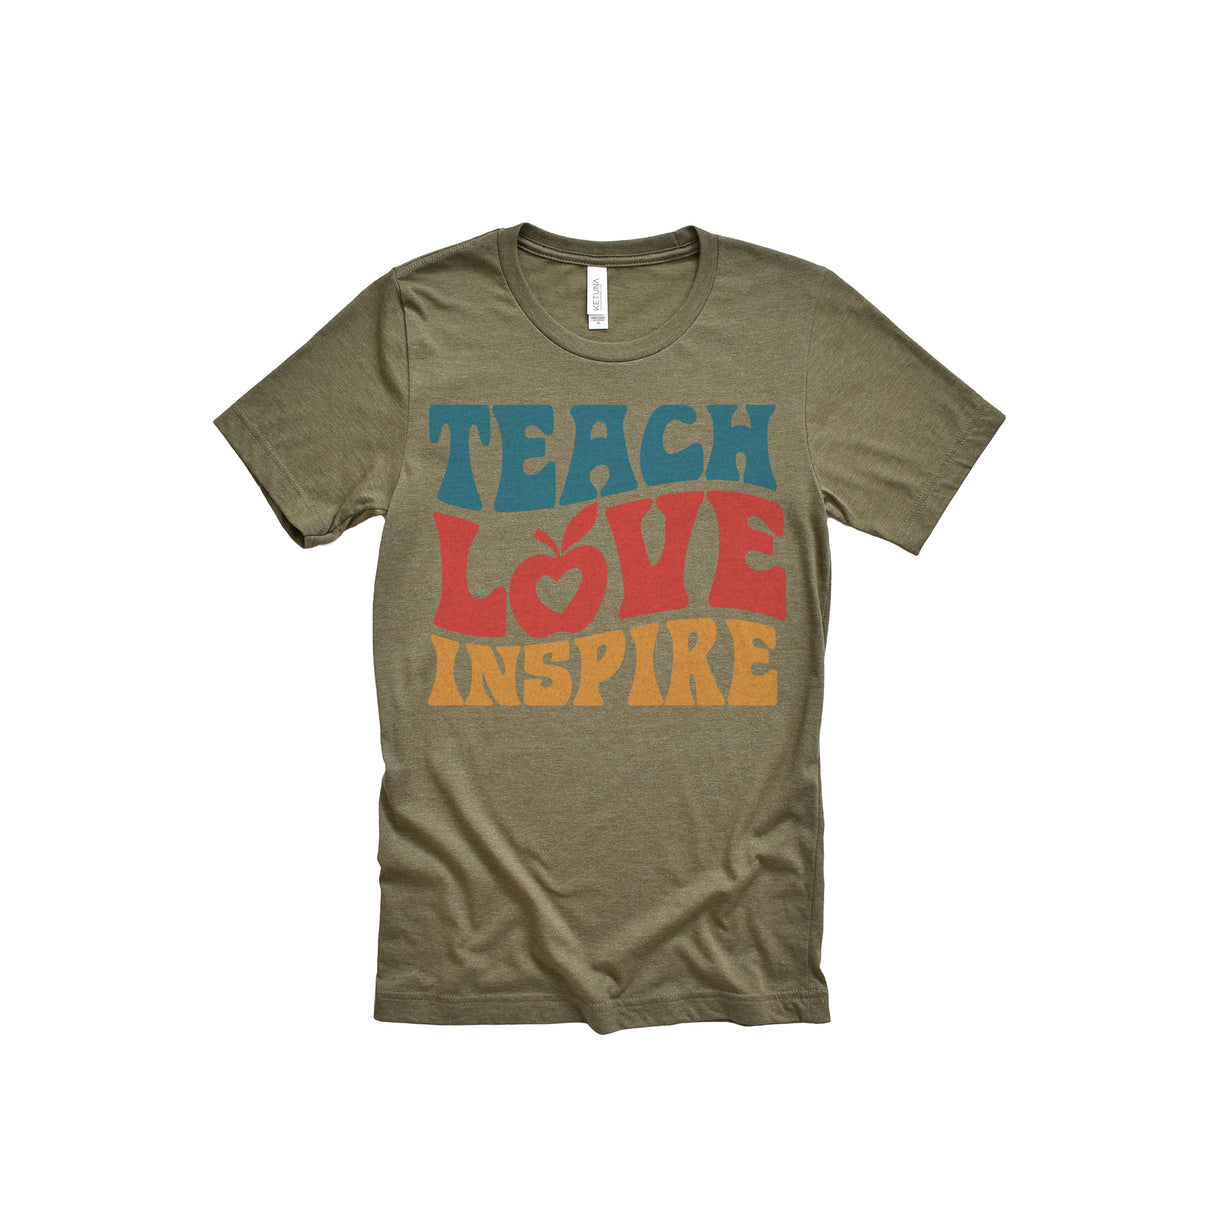 Teacher Love Inspire Adult T-Shirt